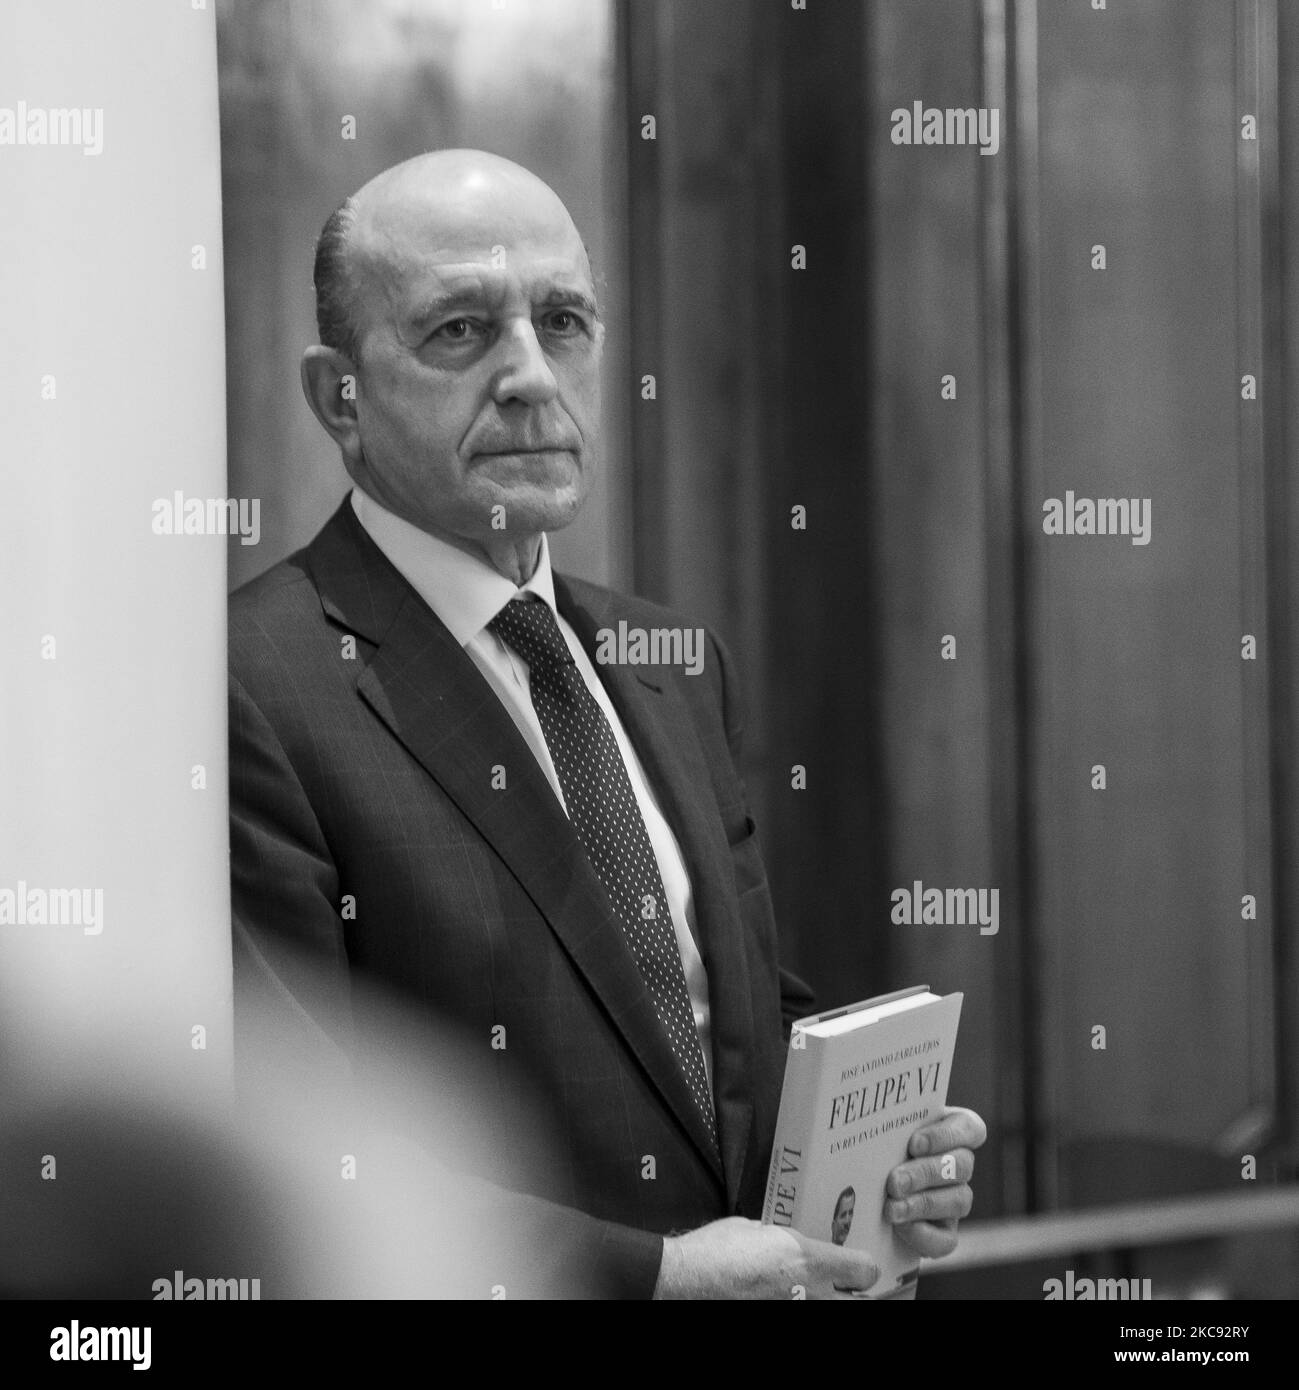 (ANMERKUNG DES HERAUSGEBERS: Bild wurde in Schwarz-Weiß umgewandelt) Journalist Jose Antonio Zarzalejos, während der Präsentation des Buches "Feld VI. Ein König in Not', am 10. Februar 2021, in Madrid, Spanien. (Foto von Oscar Gonzalez/NurPhoto) Stockfoto